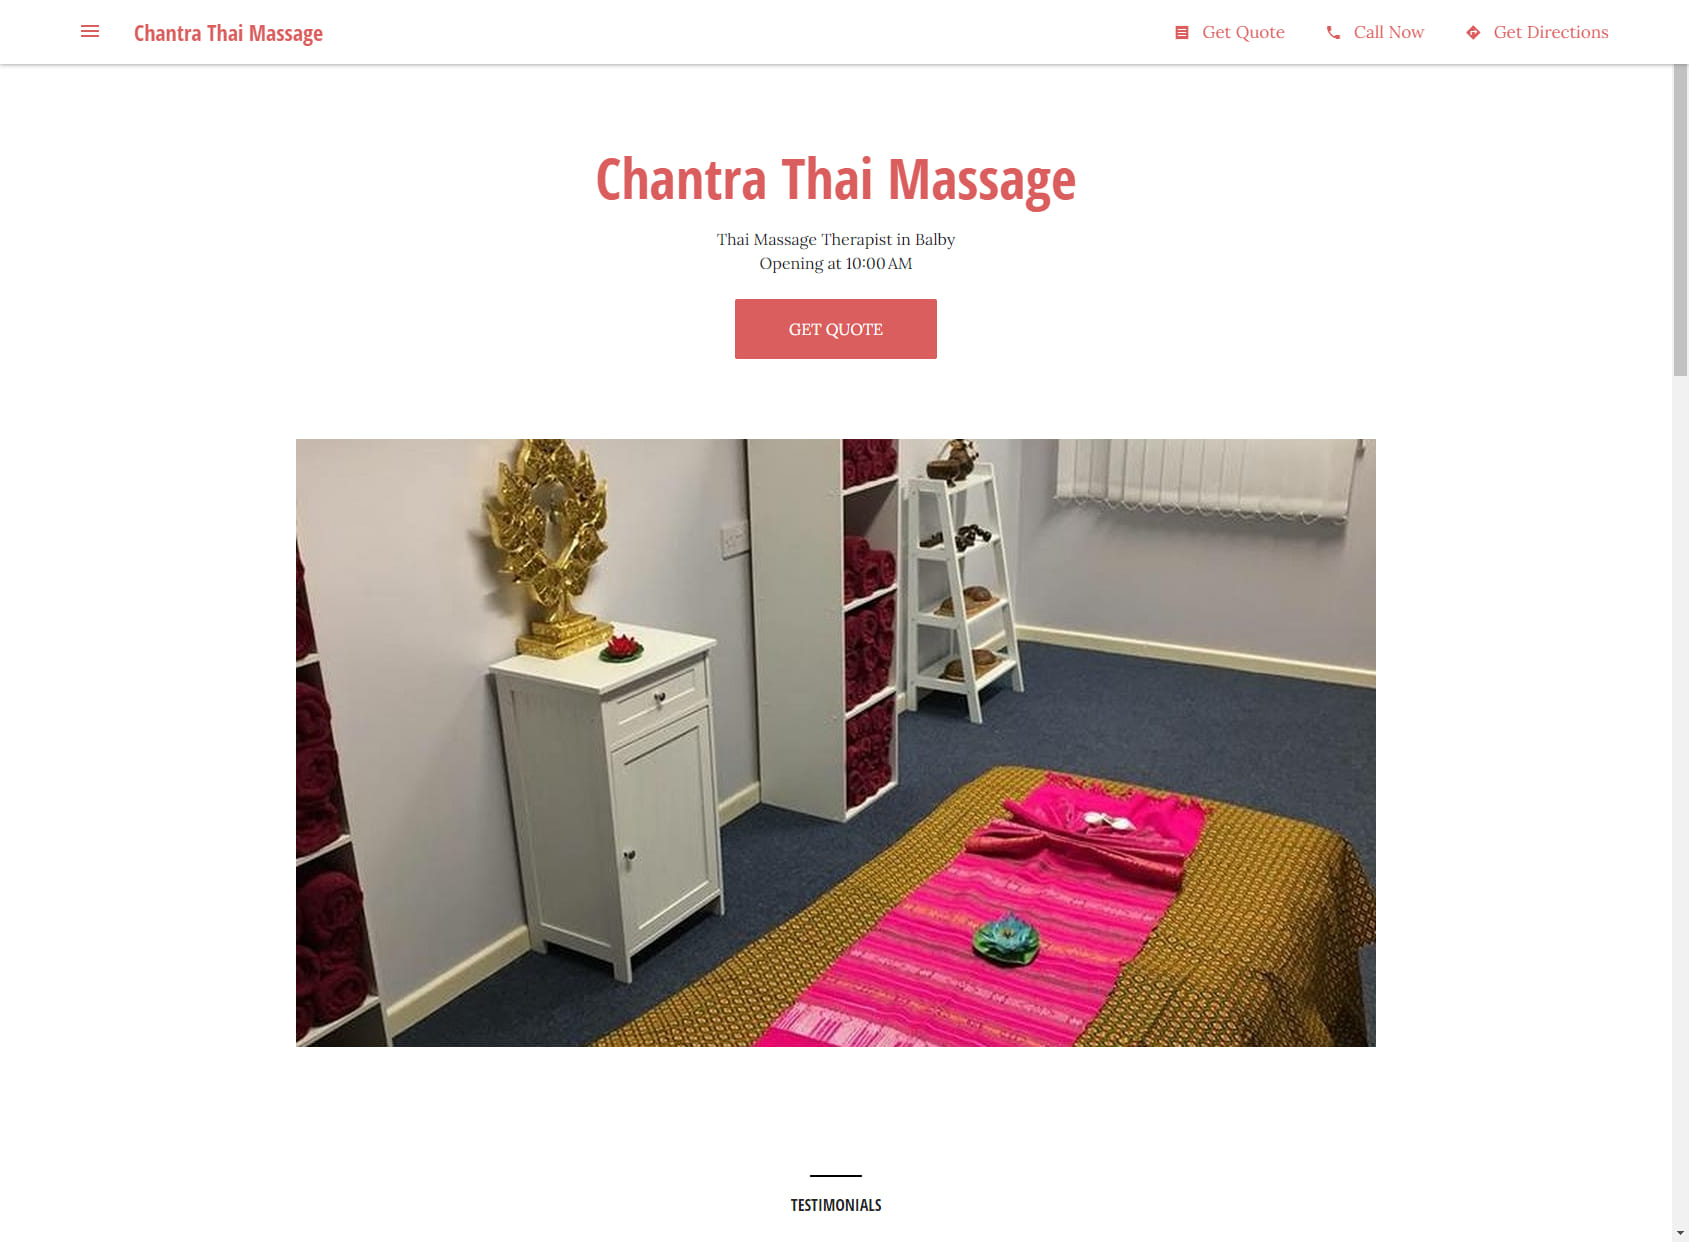 Chantra Thai Massage